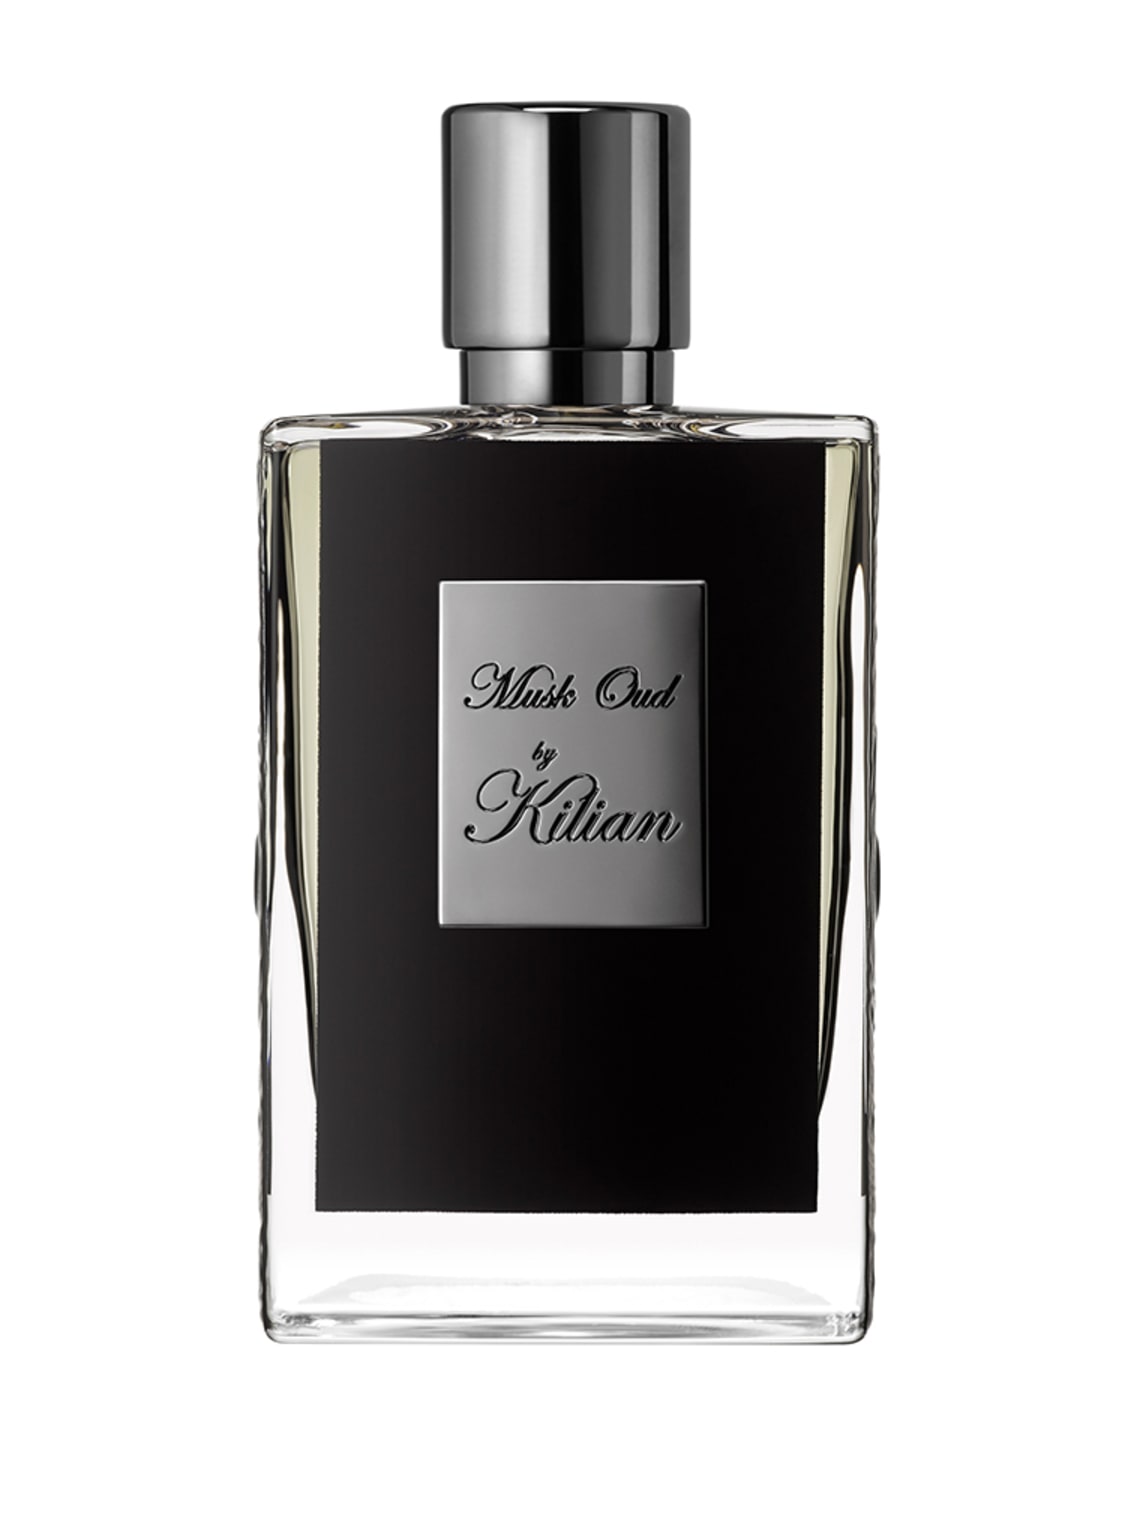 Kilian Paris Musk Oud Refillable Eau de Parfum 50 ml von Kilian Paris